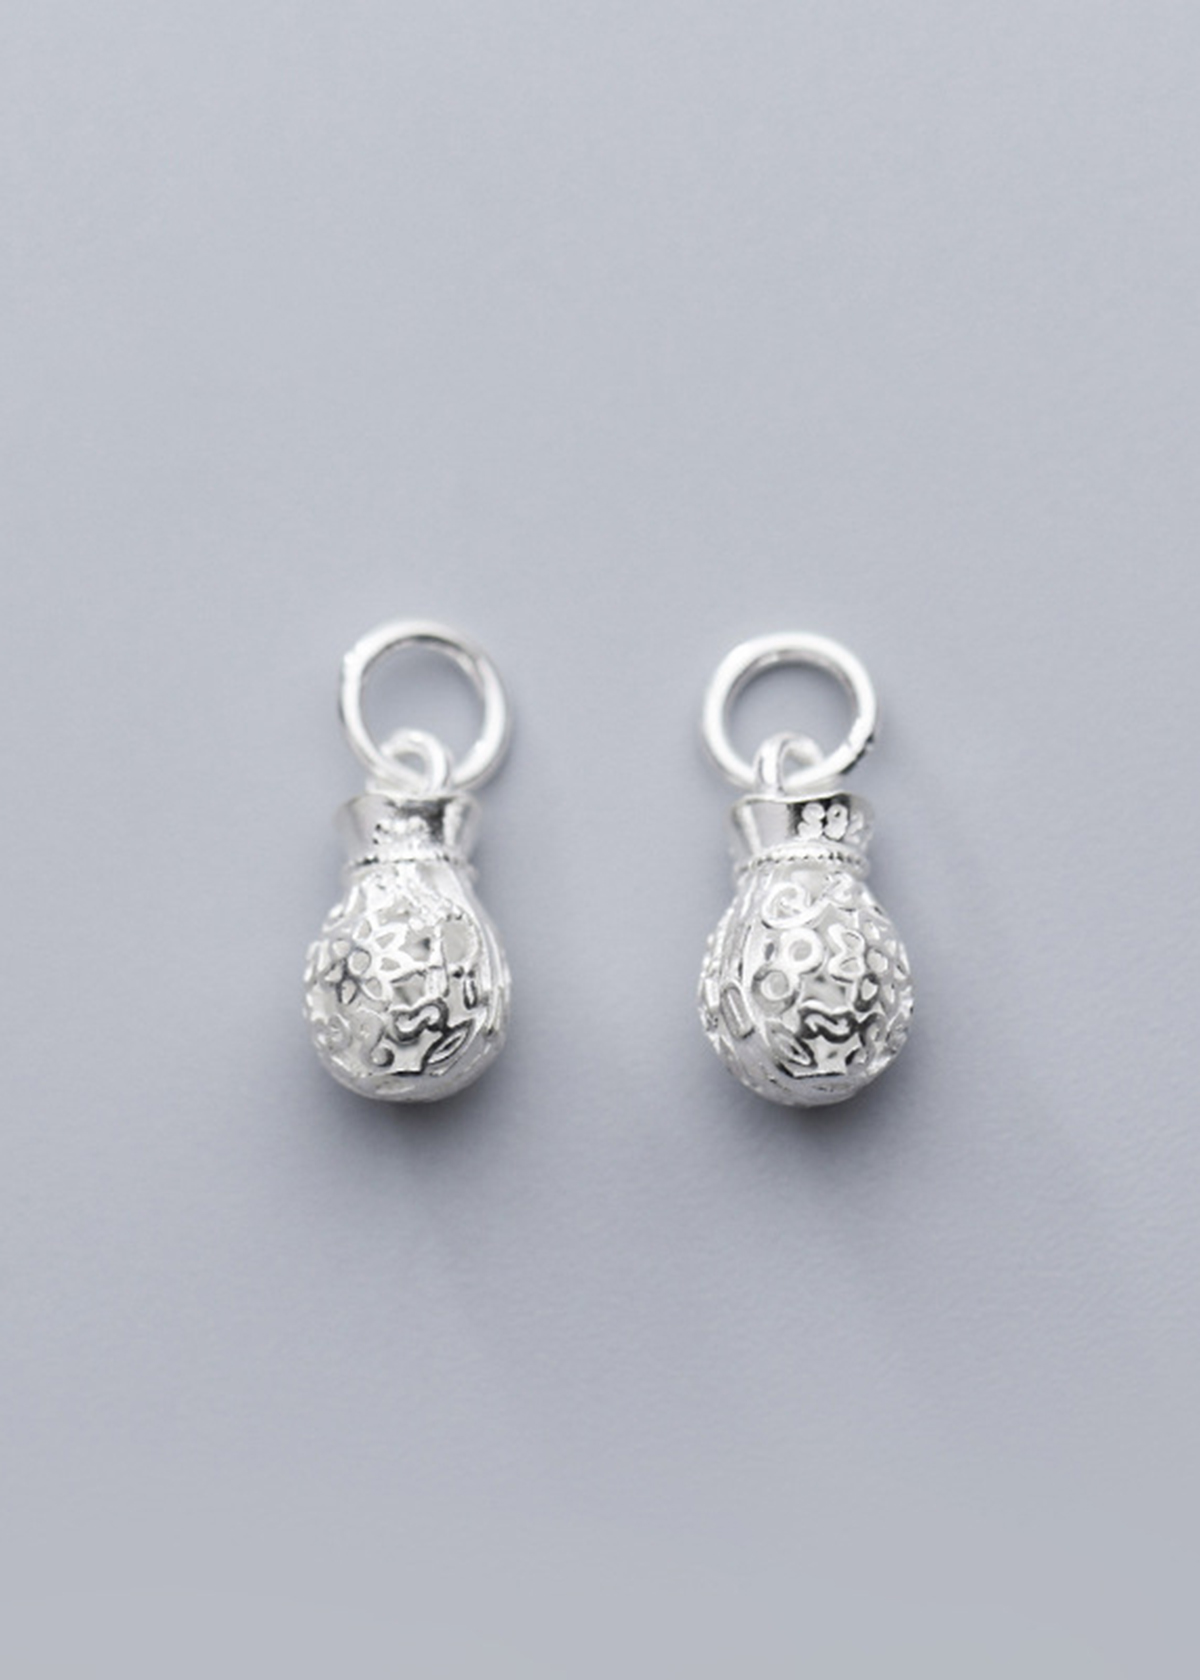 Combo 2 cái charm bạc hình túi tiền treo - Ngọc Quý Gemstones